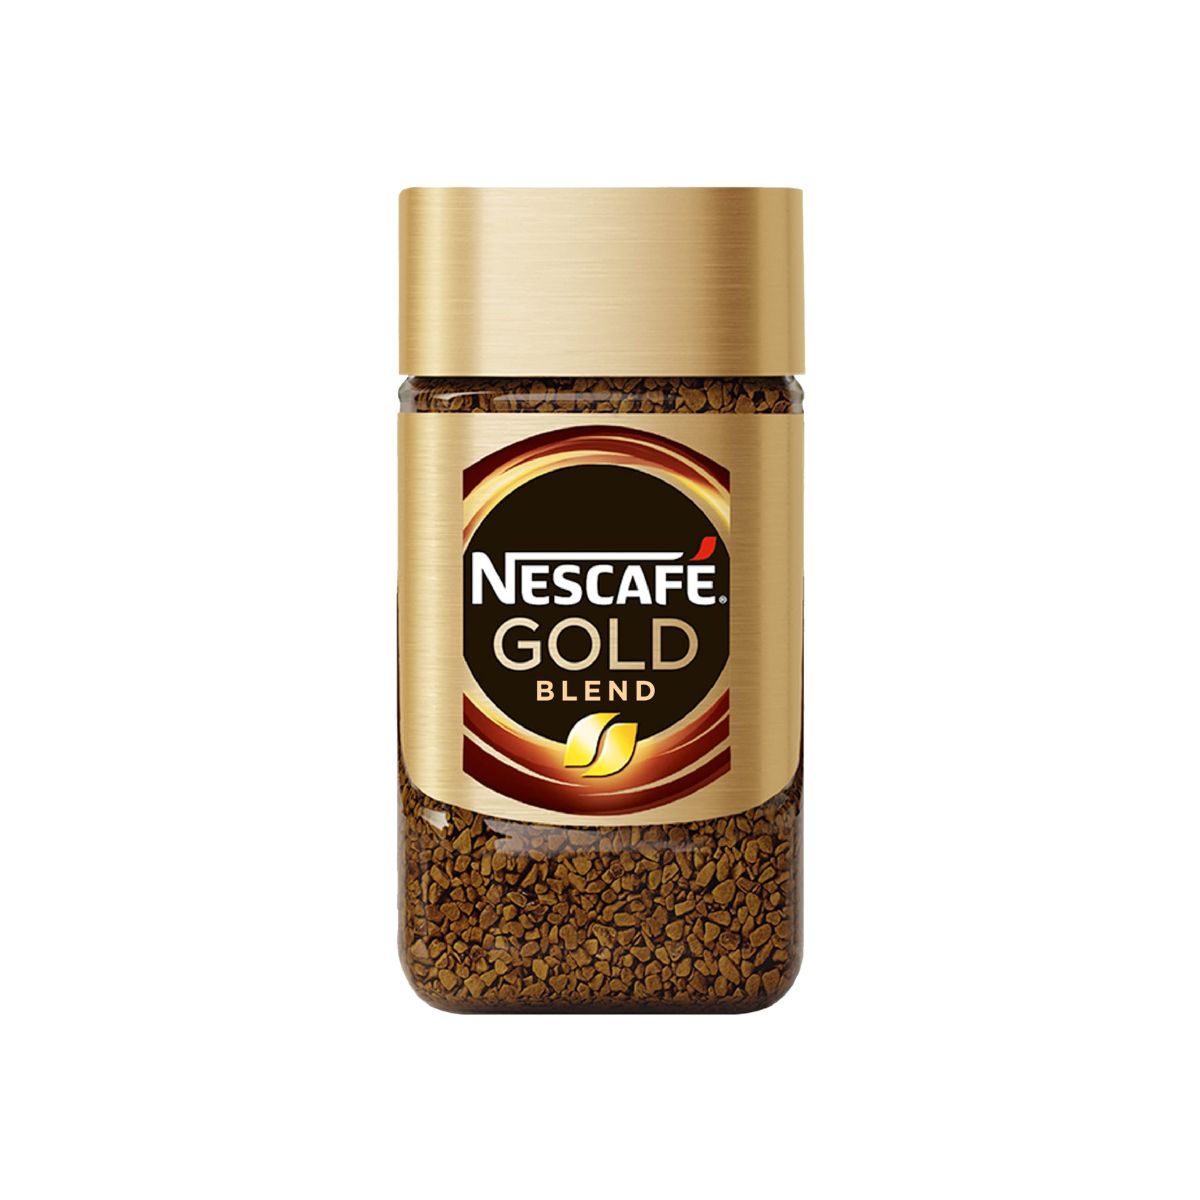 Nescafe Gold Blend Coffee - 50g